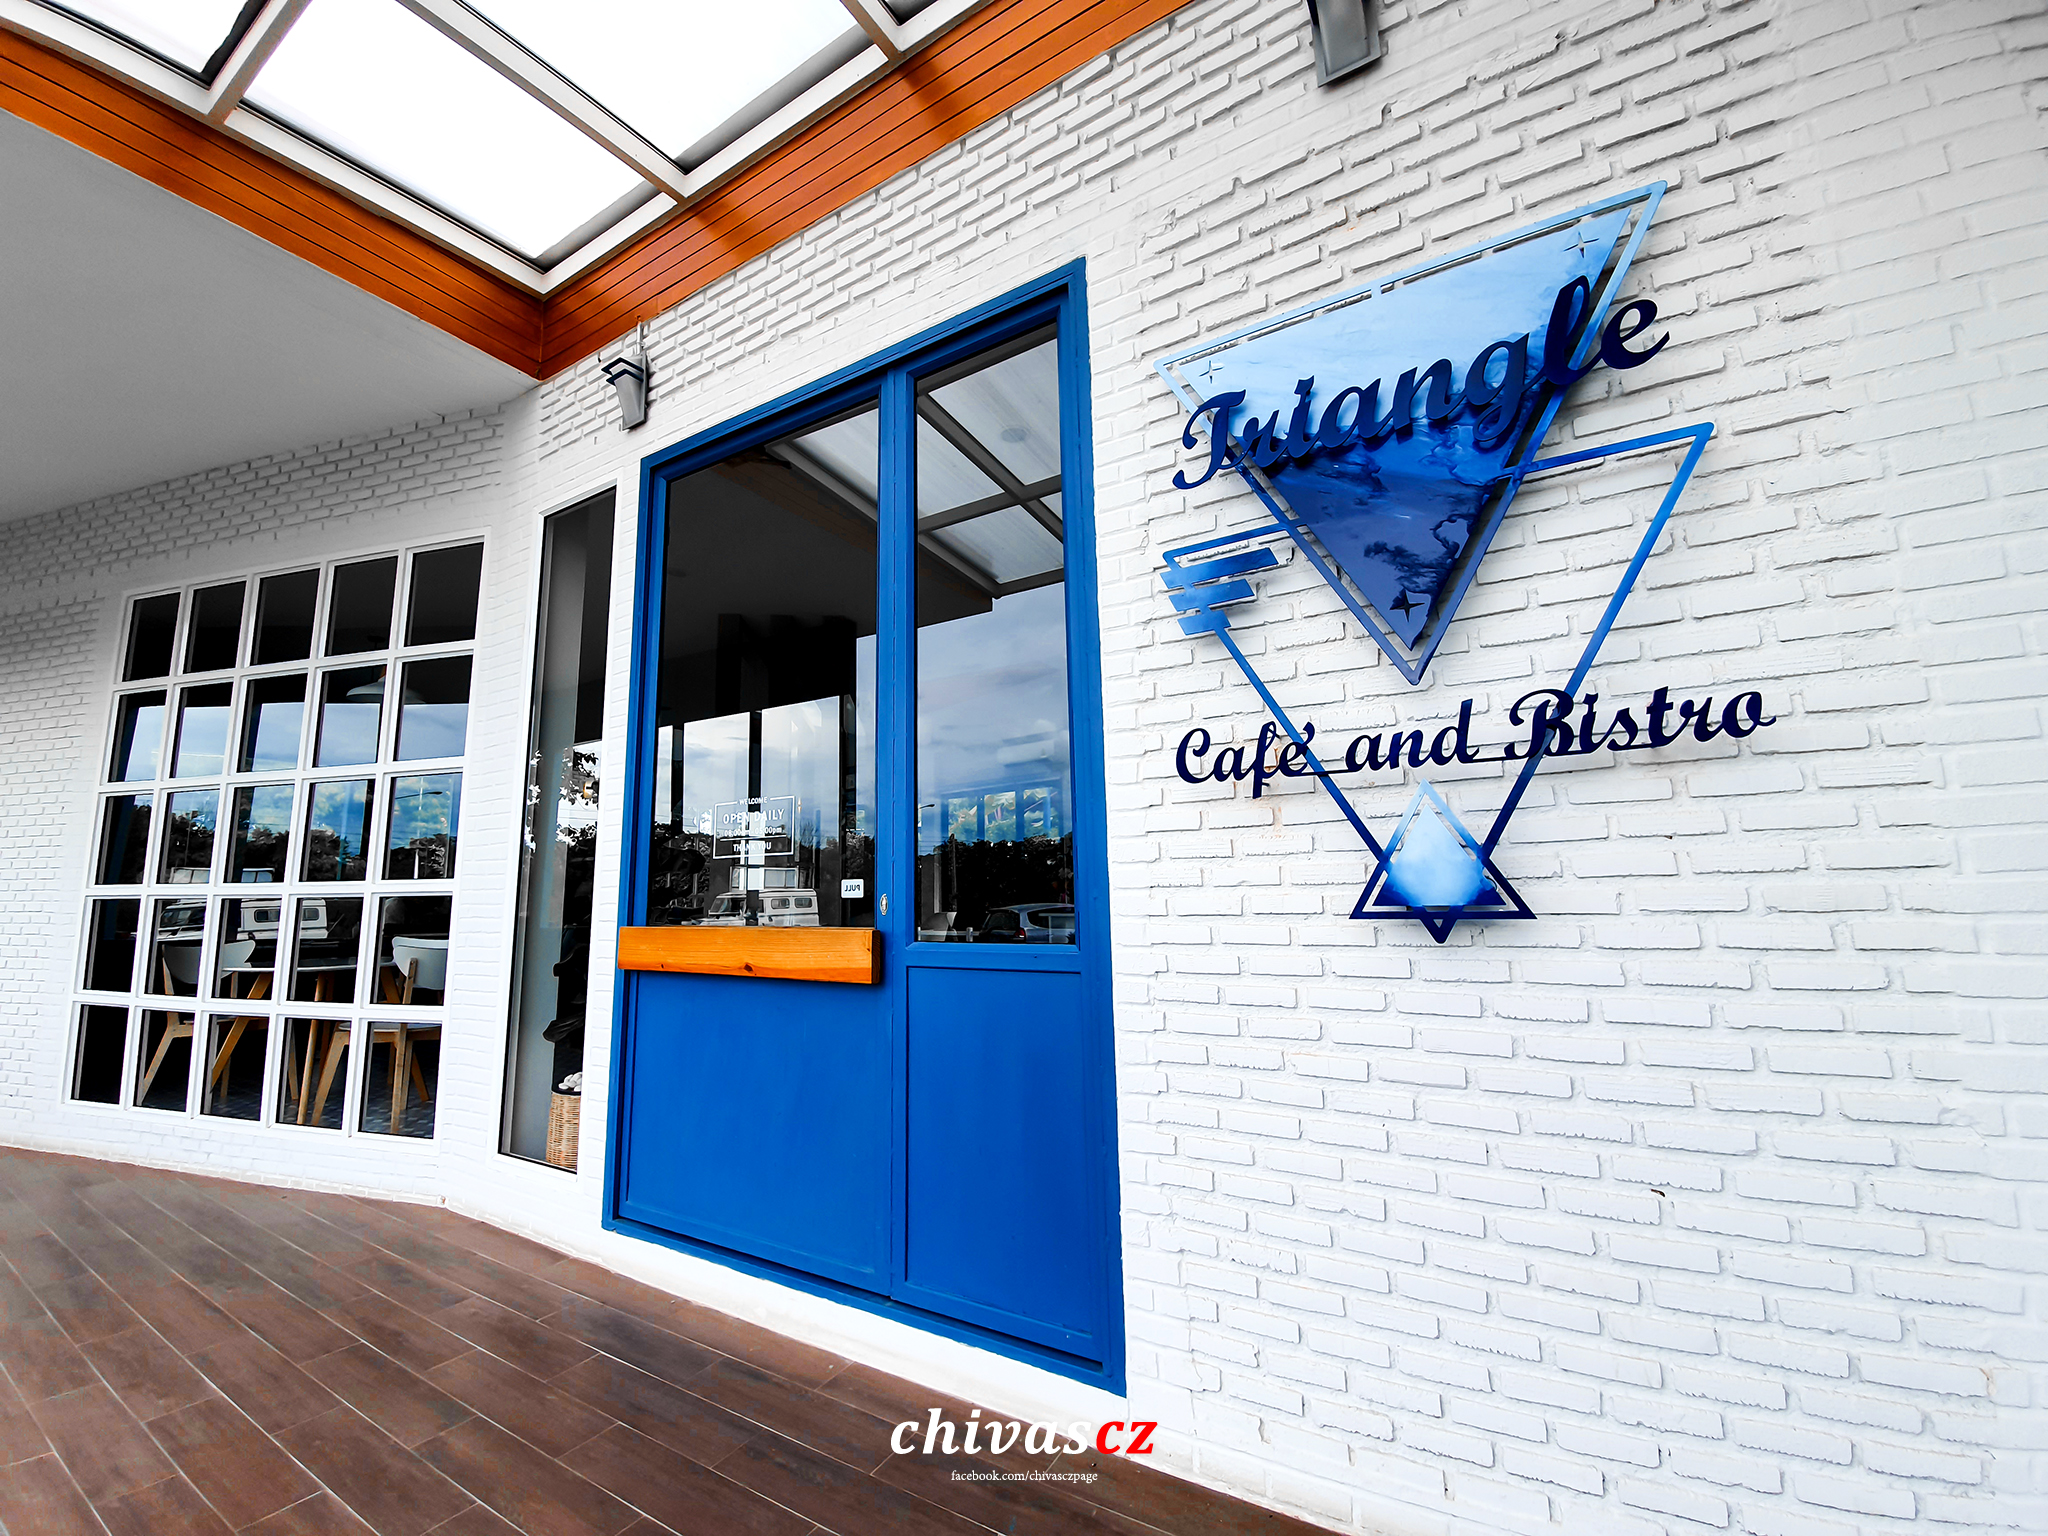 [รีวิว] ร้านกาแฟ Triangle Cafe’ and Bistro เพชรบูรณ์